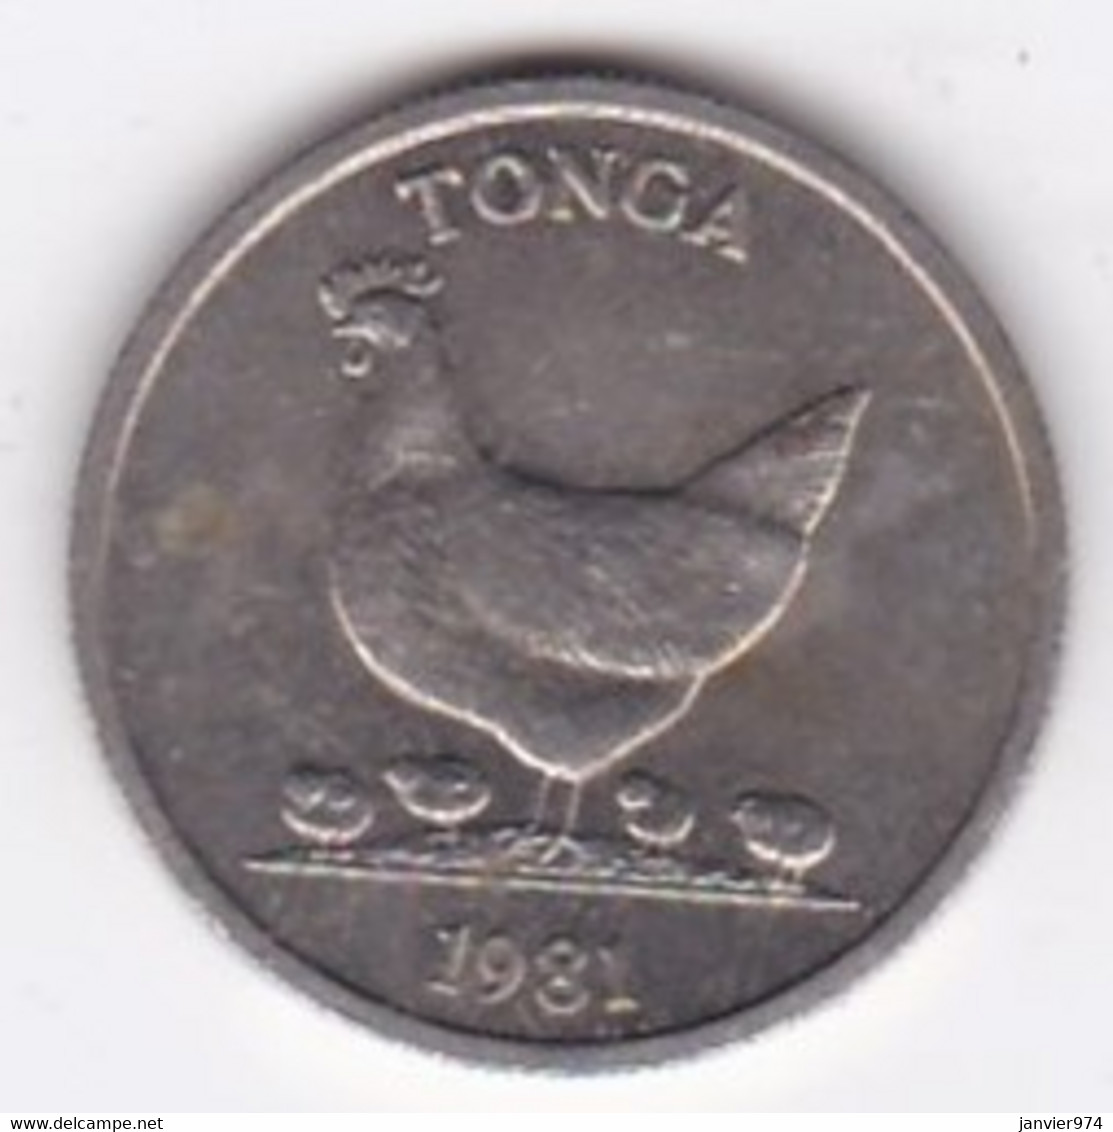 Tonga 5 Seniti 1981 FAO.  Taufa'ahau Tupou IV, Copper-nickel, KM# 68 - Tonga